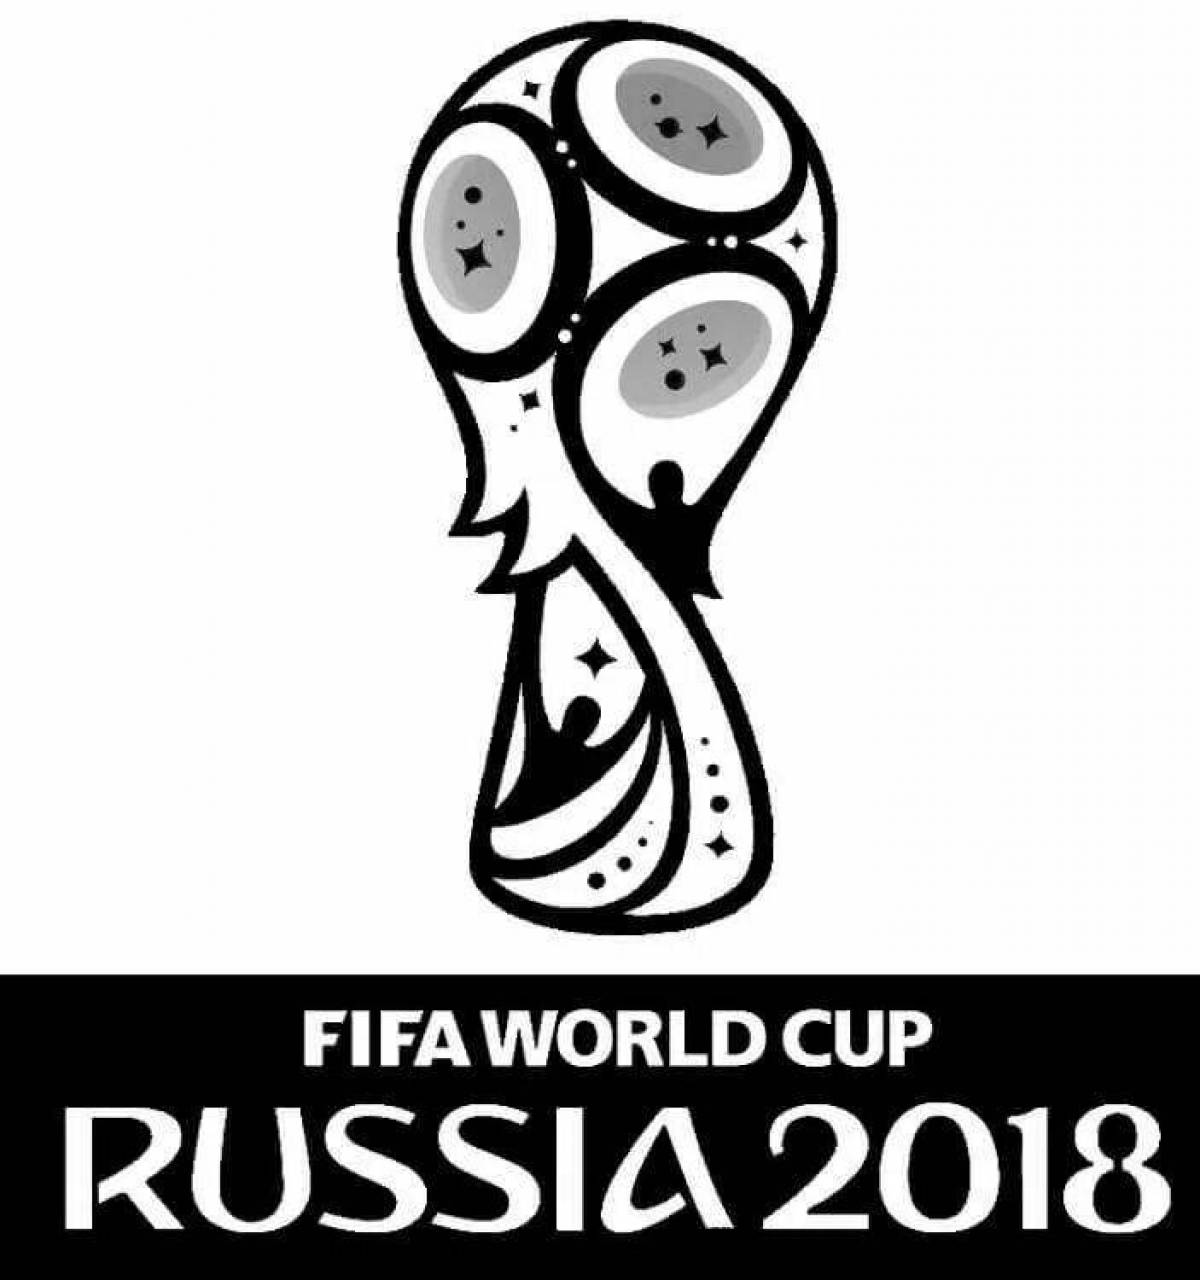 Великолепная раскраска чемпионата мира по футболу